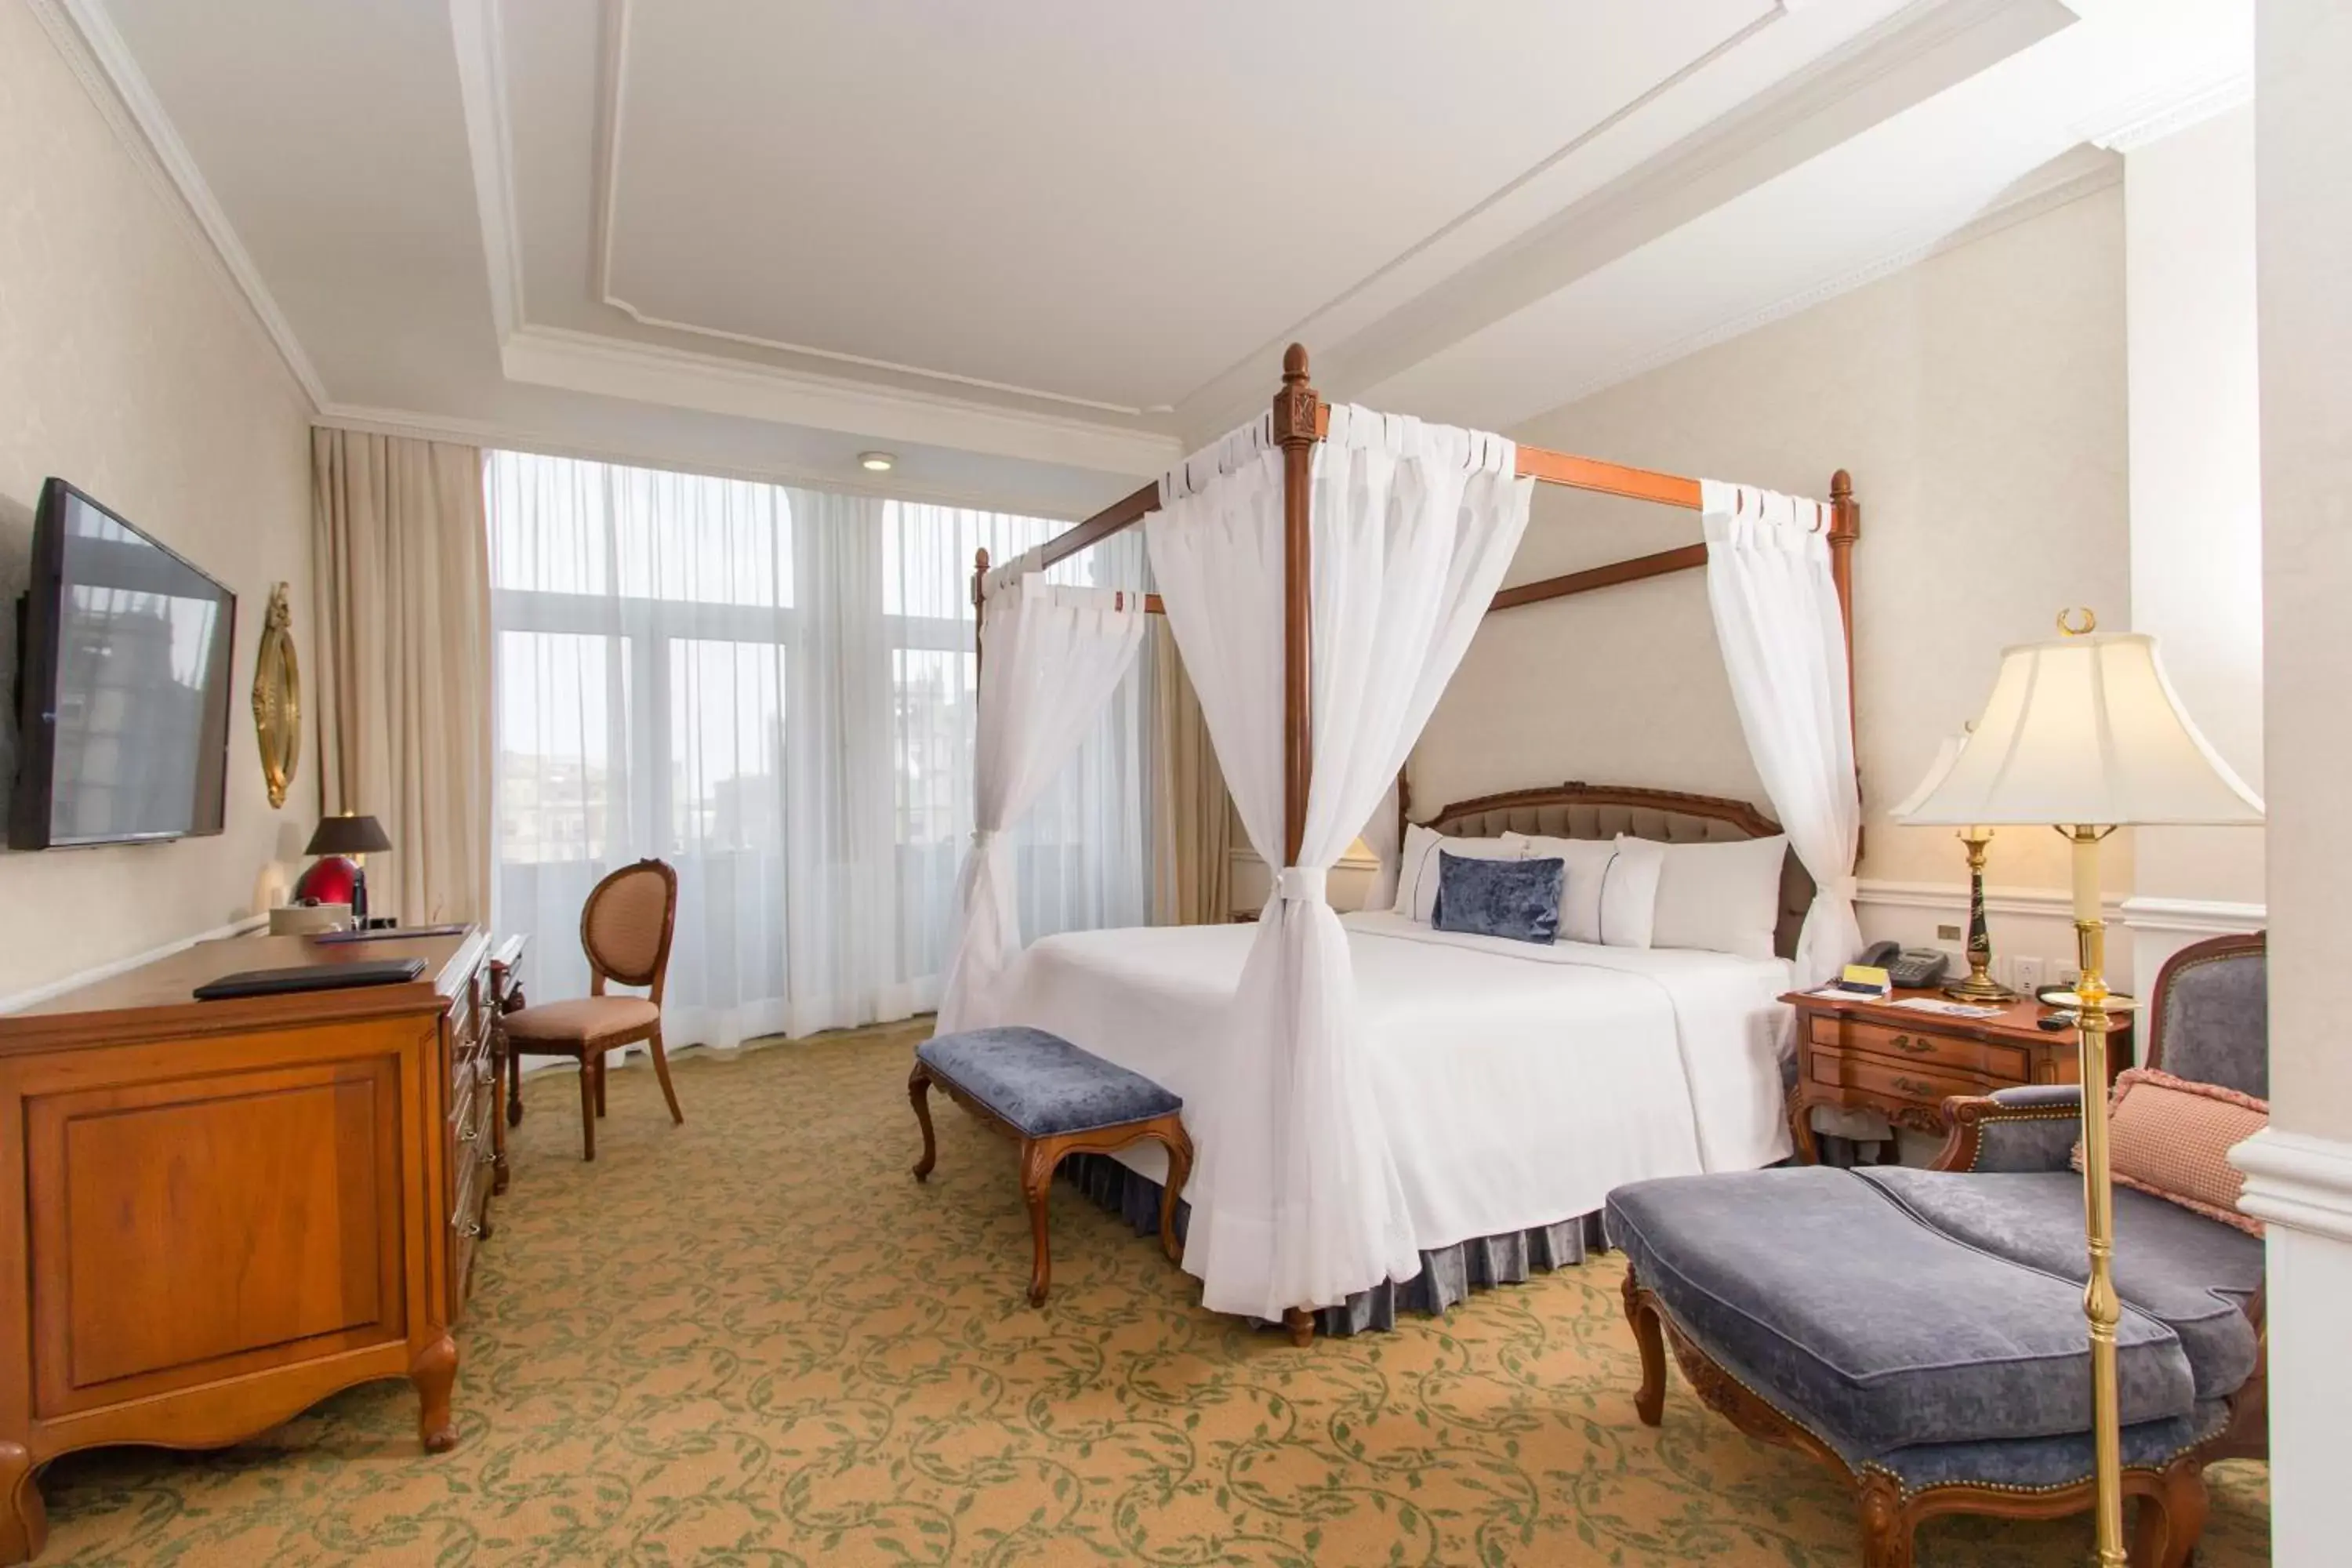 Photo of the whole room, Bed in Gran Hotel Ciudad de Mexico